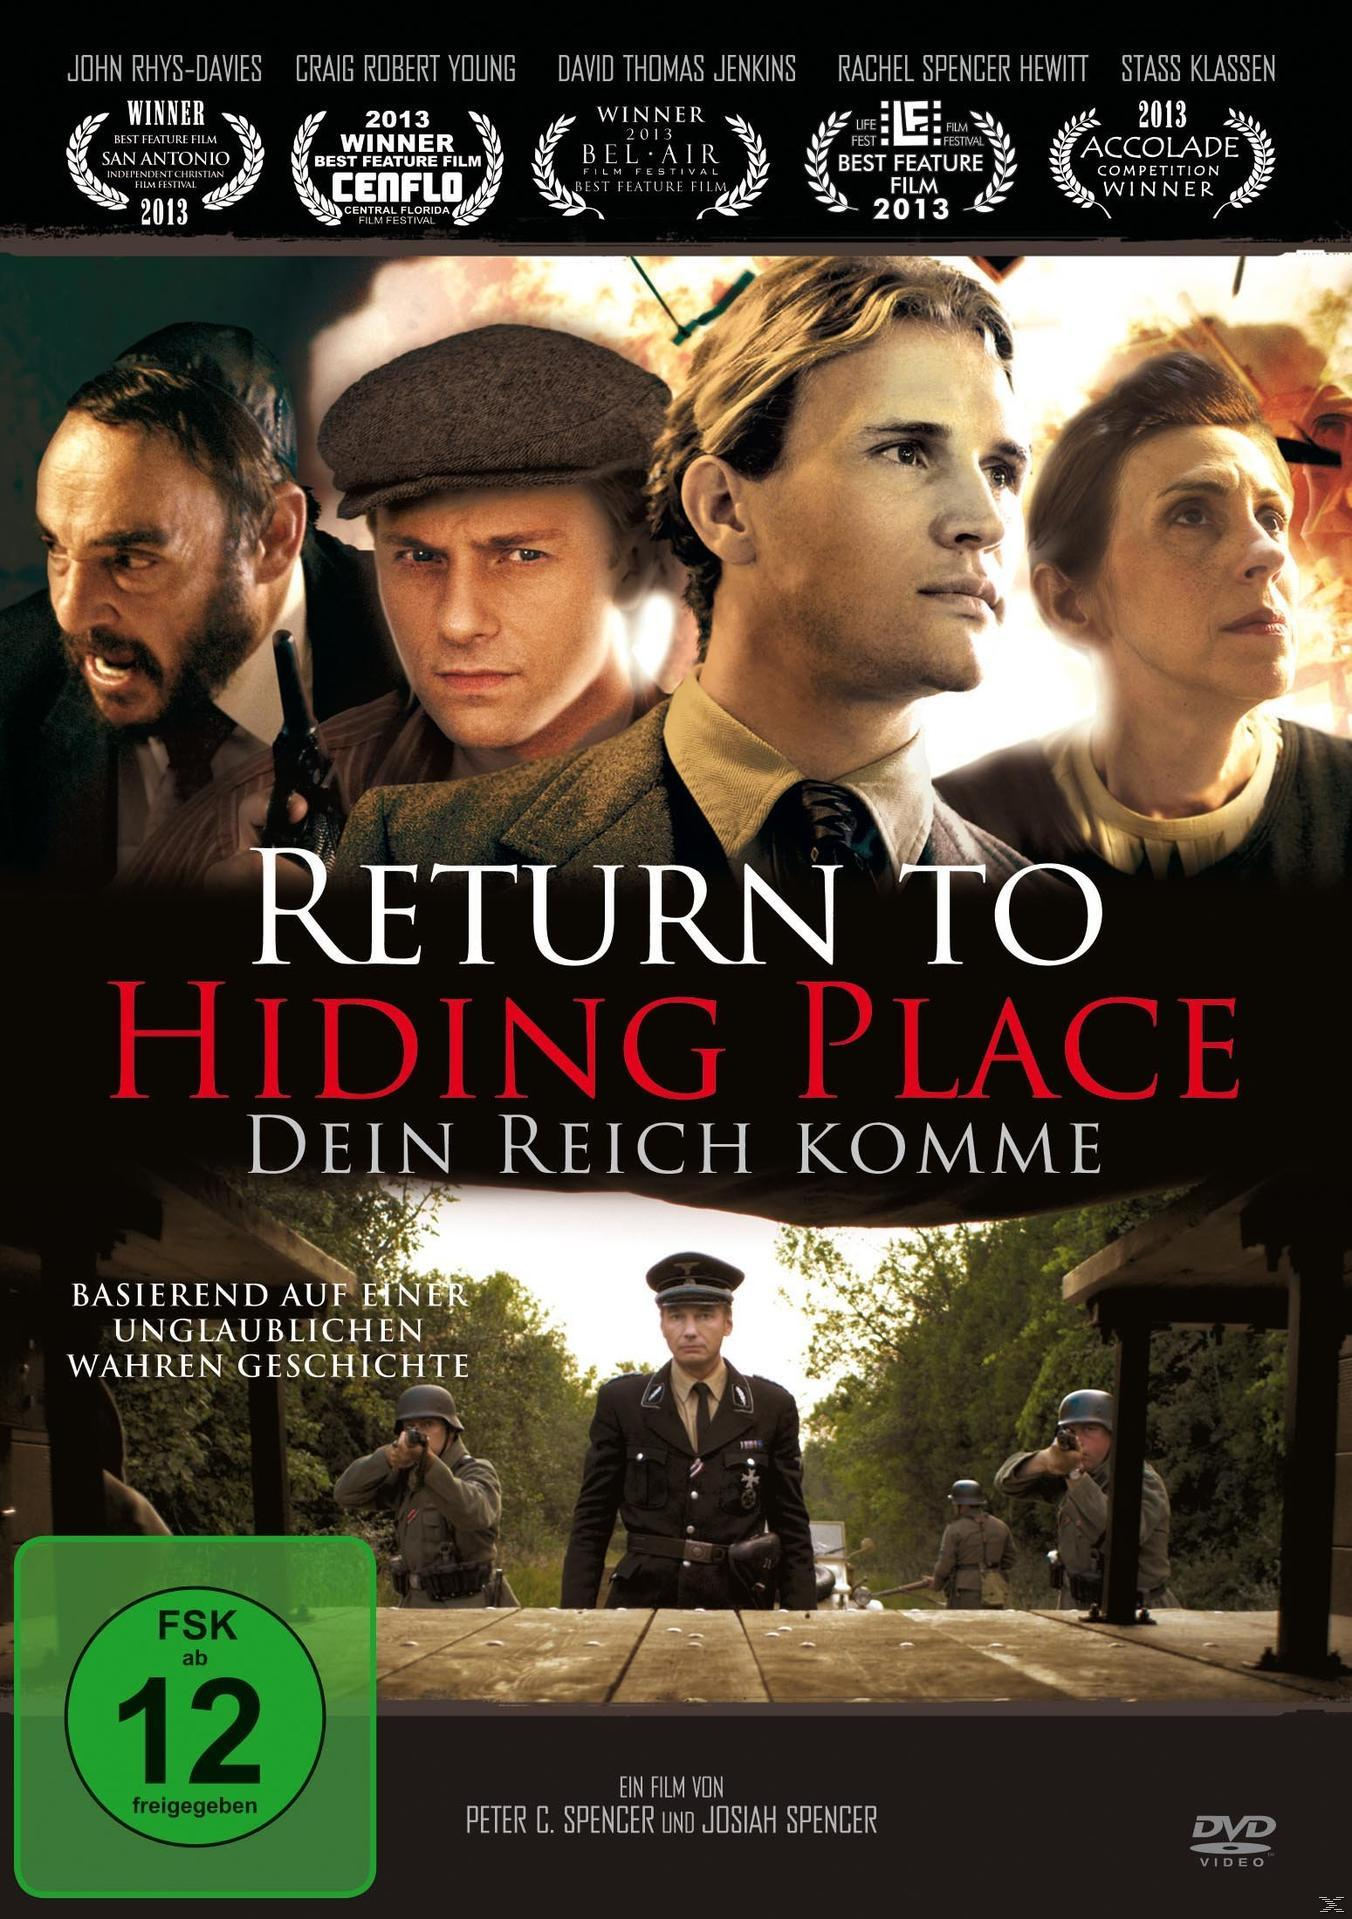 komme Reich Dein Place Hiding to DVD - Return